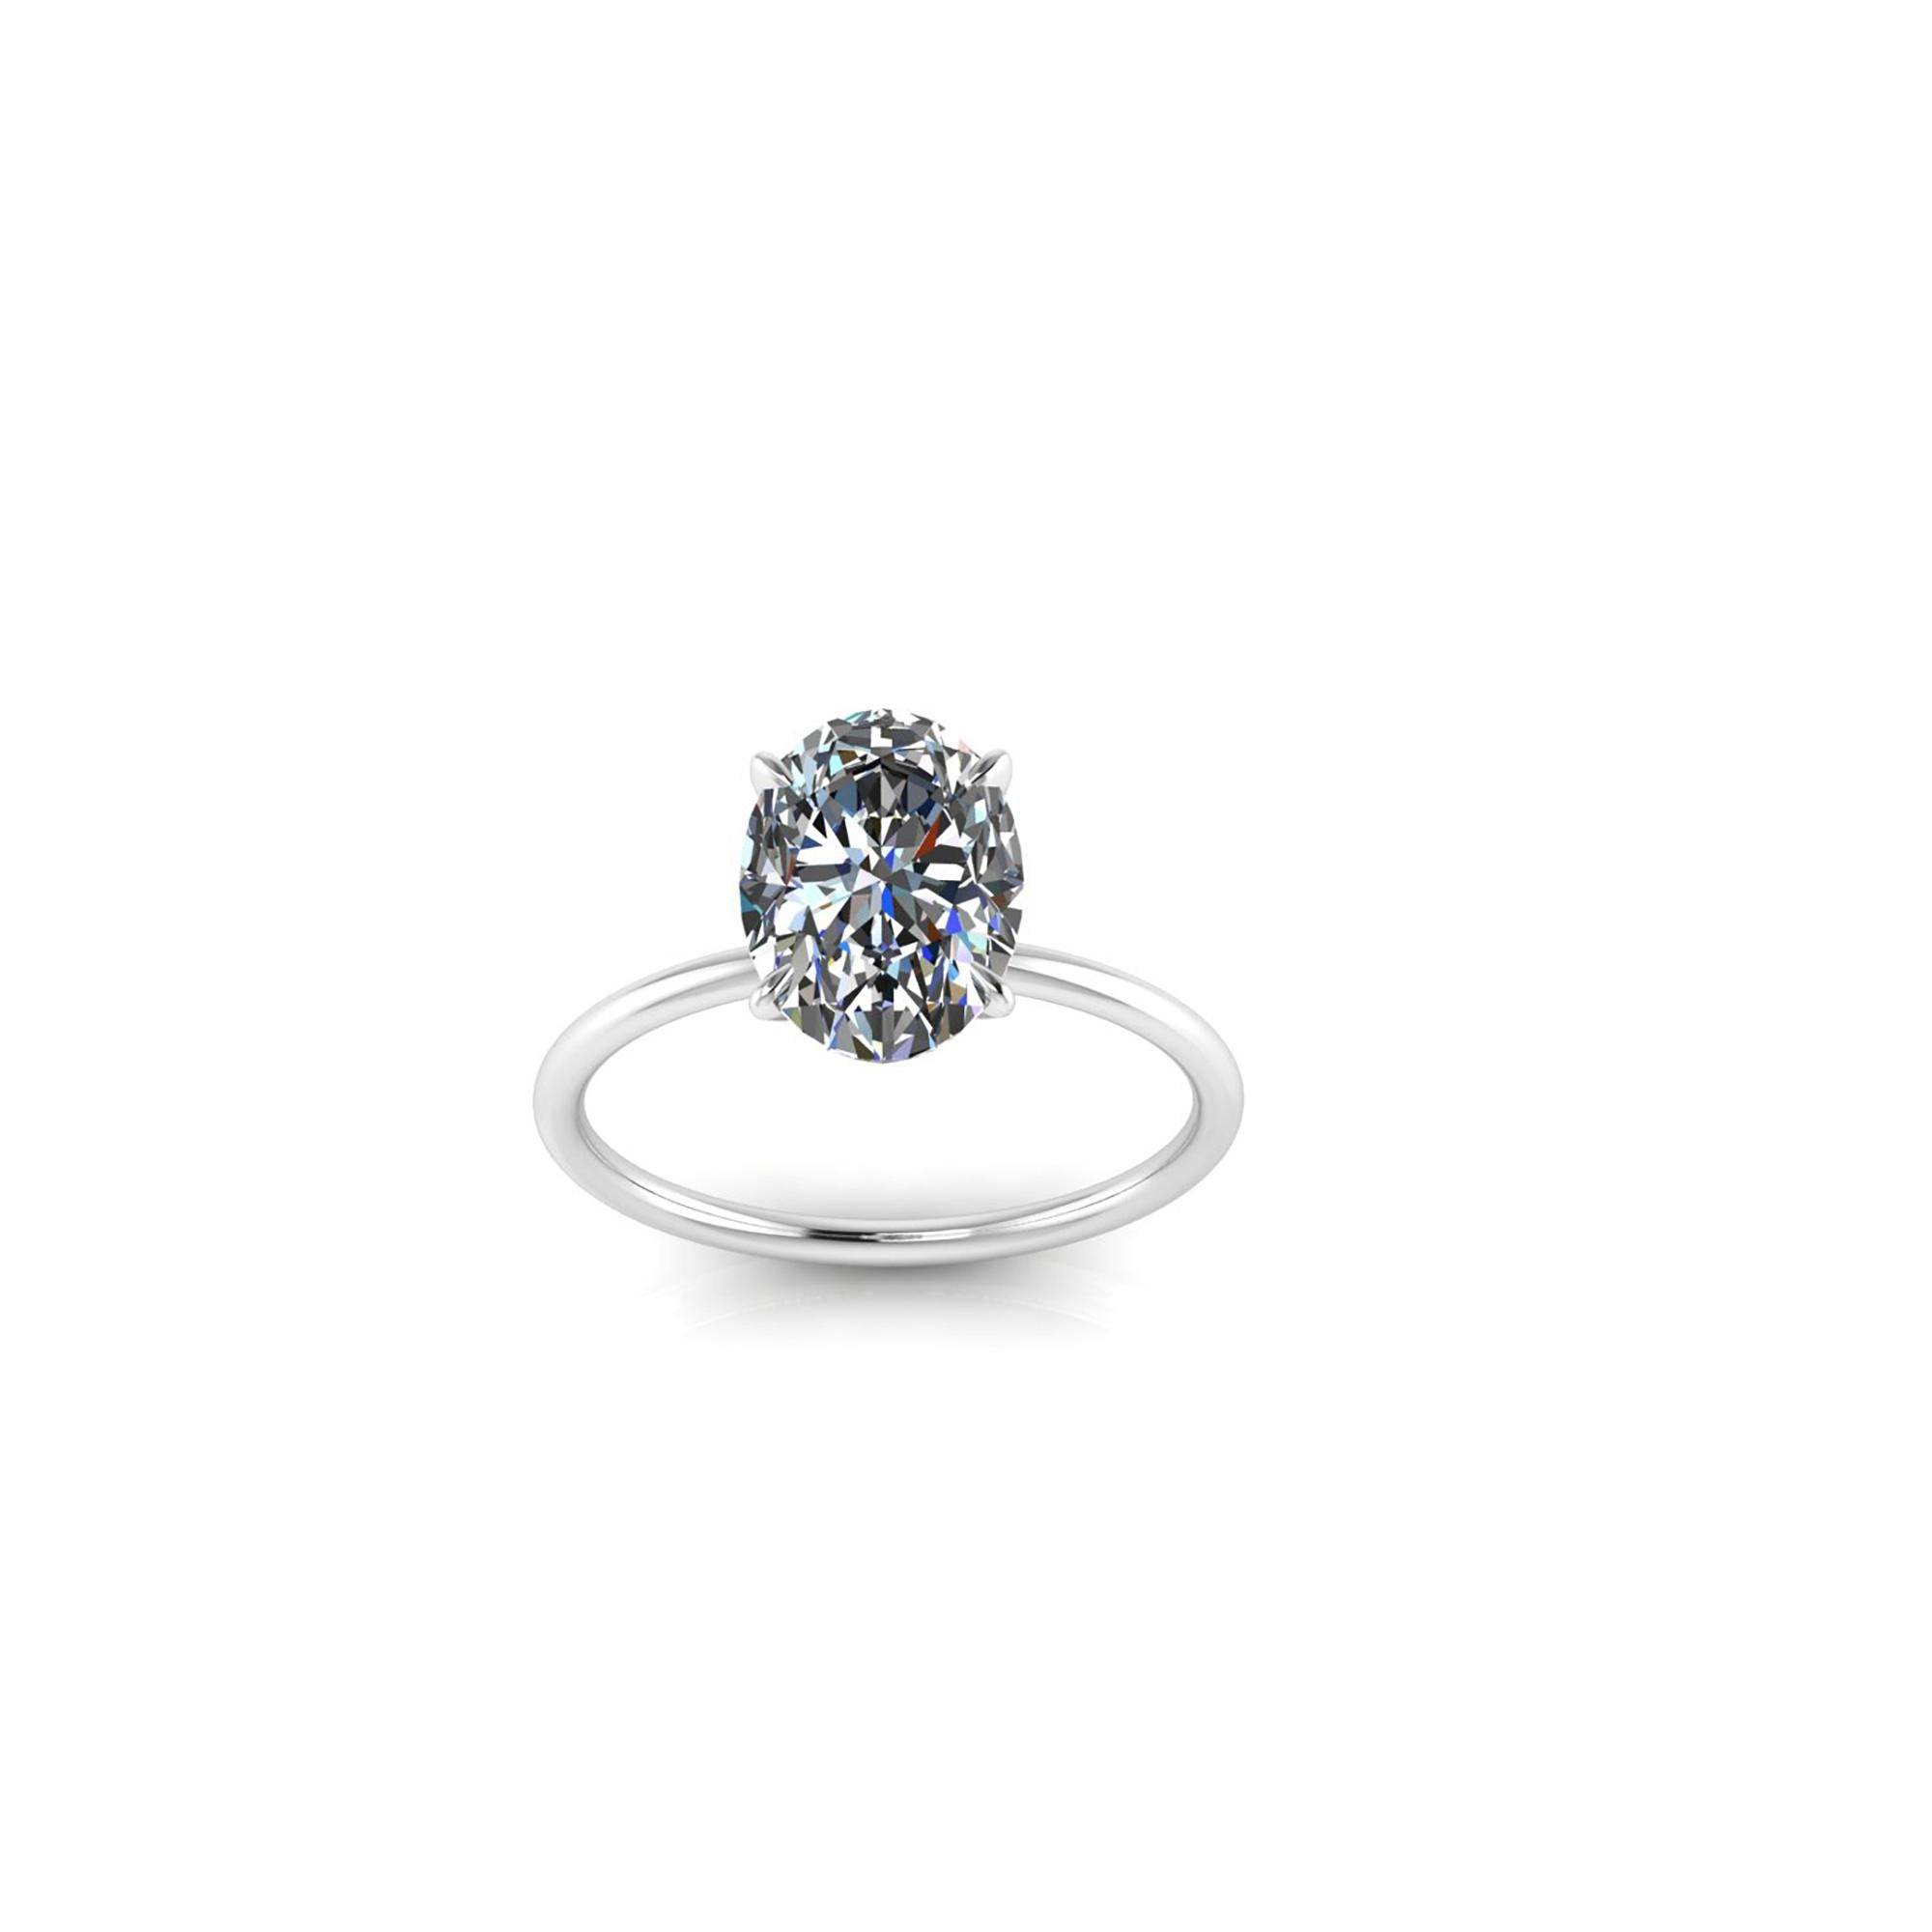 Diamant ovale de 2,01 carats certifié par le GIA, couleur G, pureté VS1, un diamant de qualité supérieure pour une brillance maximale.
Serti dans une monture basse et fine en platine 950, minimaliste et fine, pour mettre en valeur le